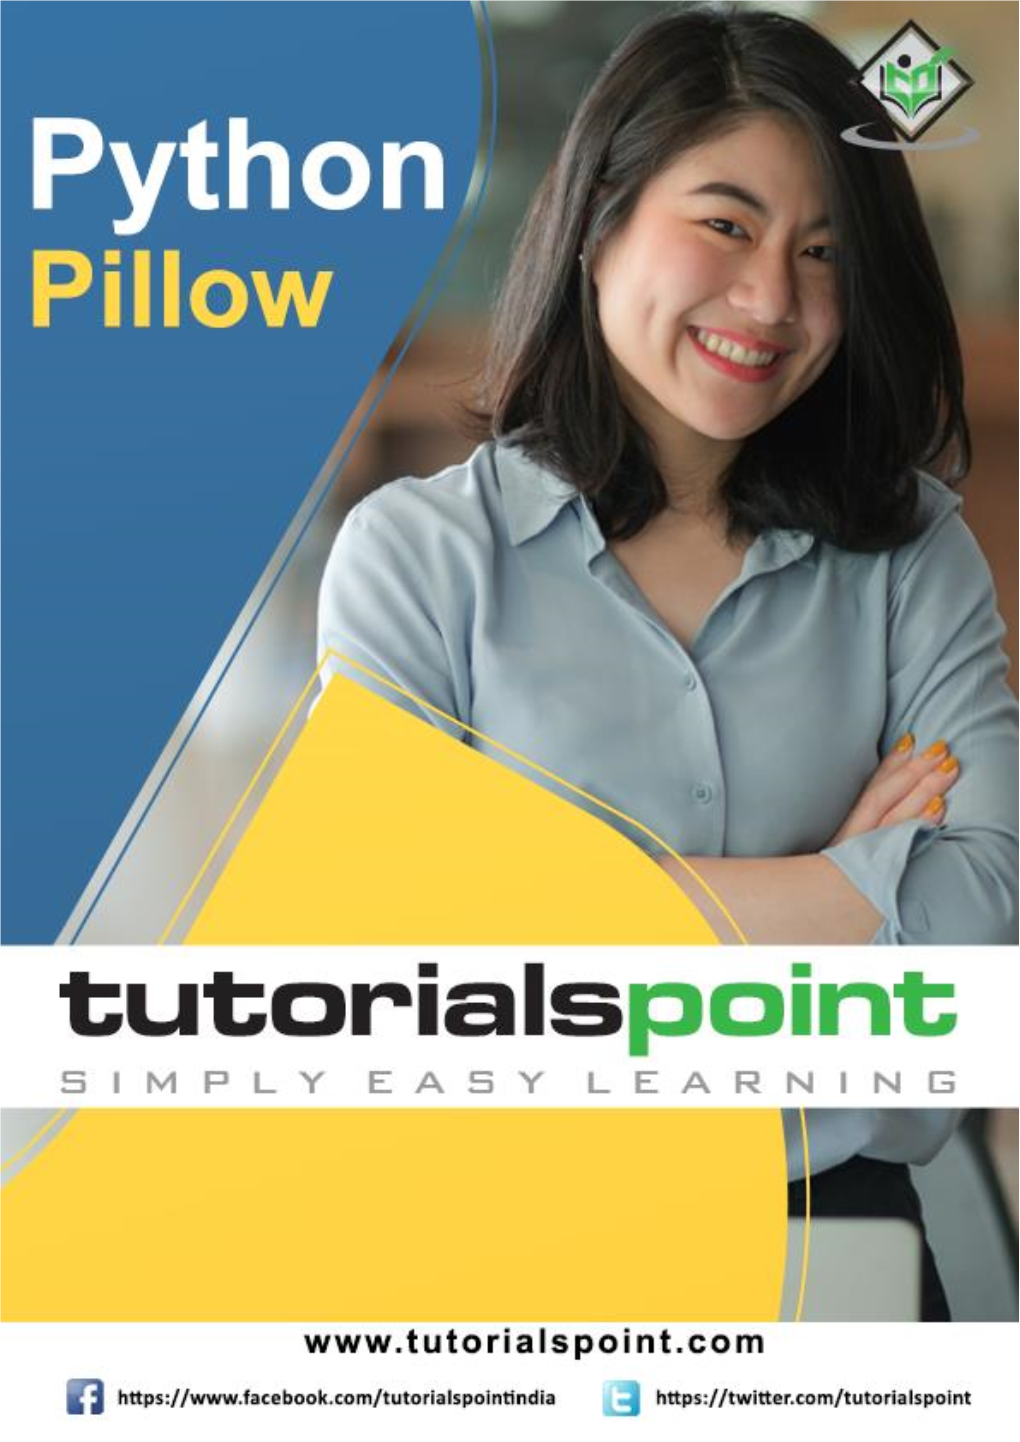 Python Pillow Tutorial